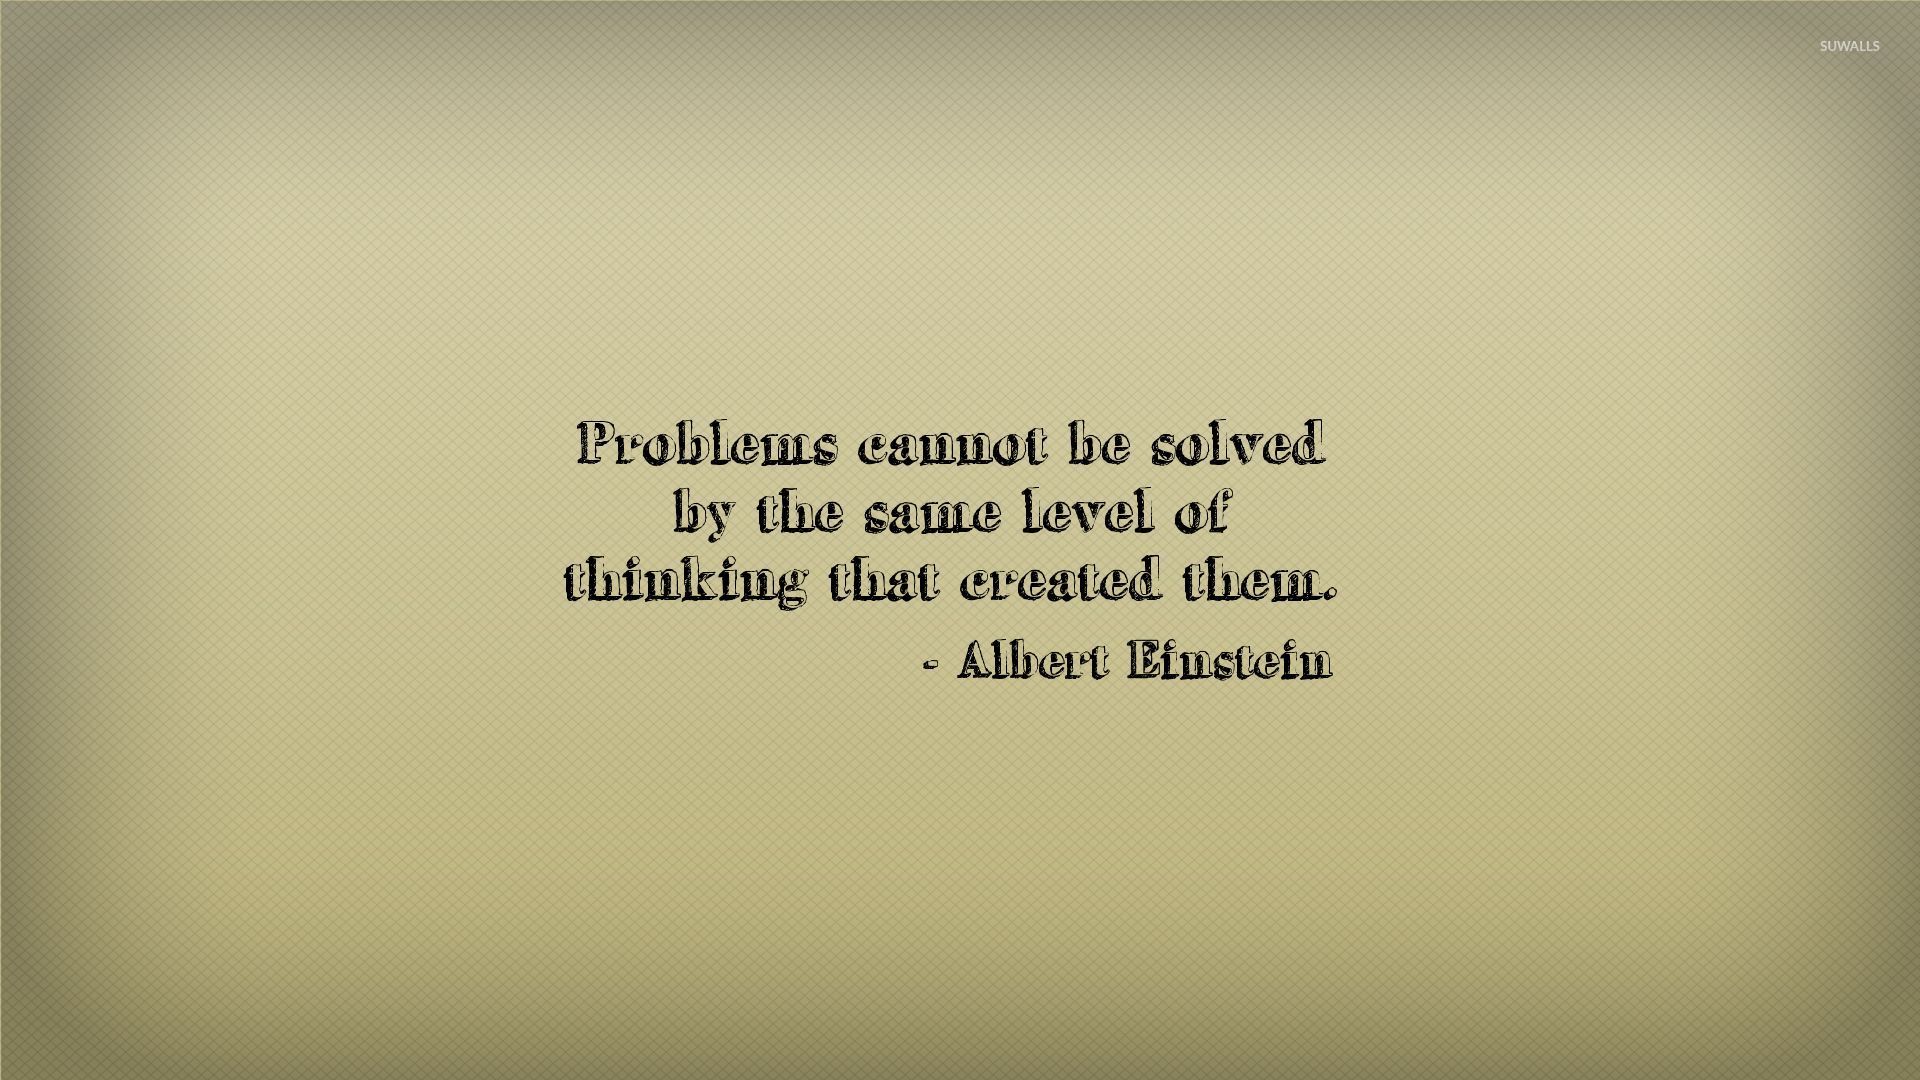 Albert Einstein quote wallpaper - Quote wallpapers - #31335